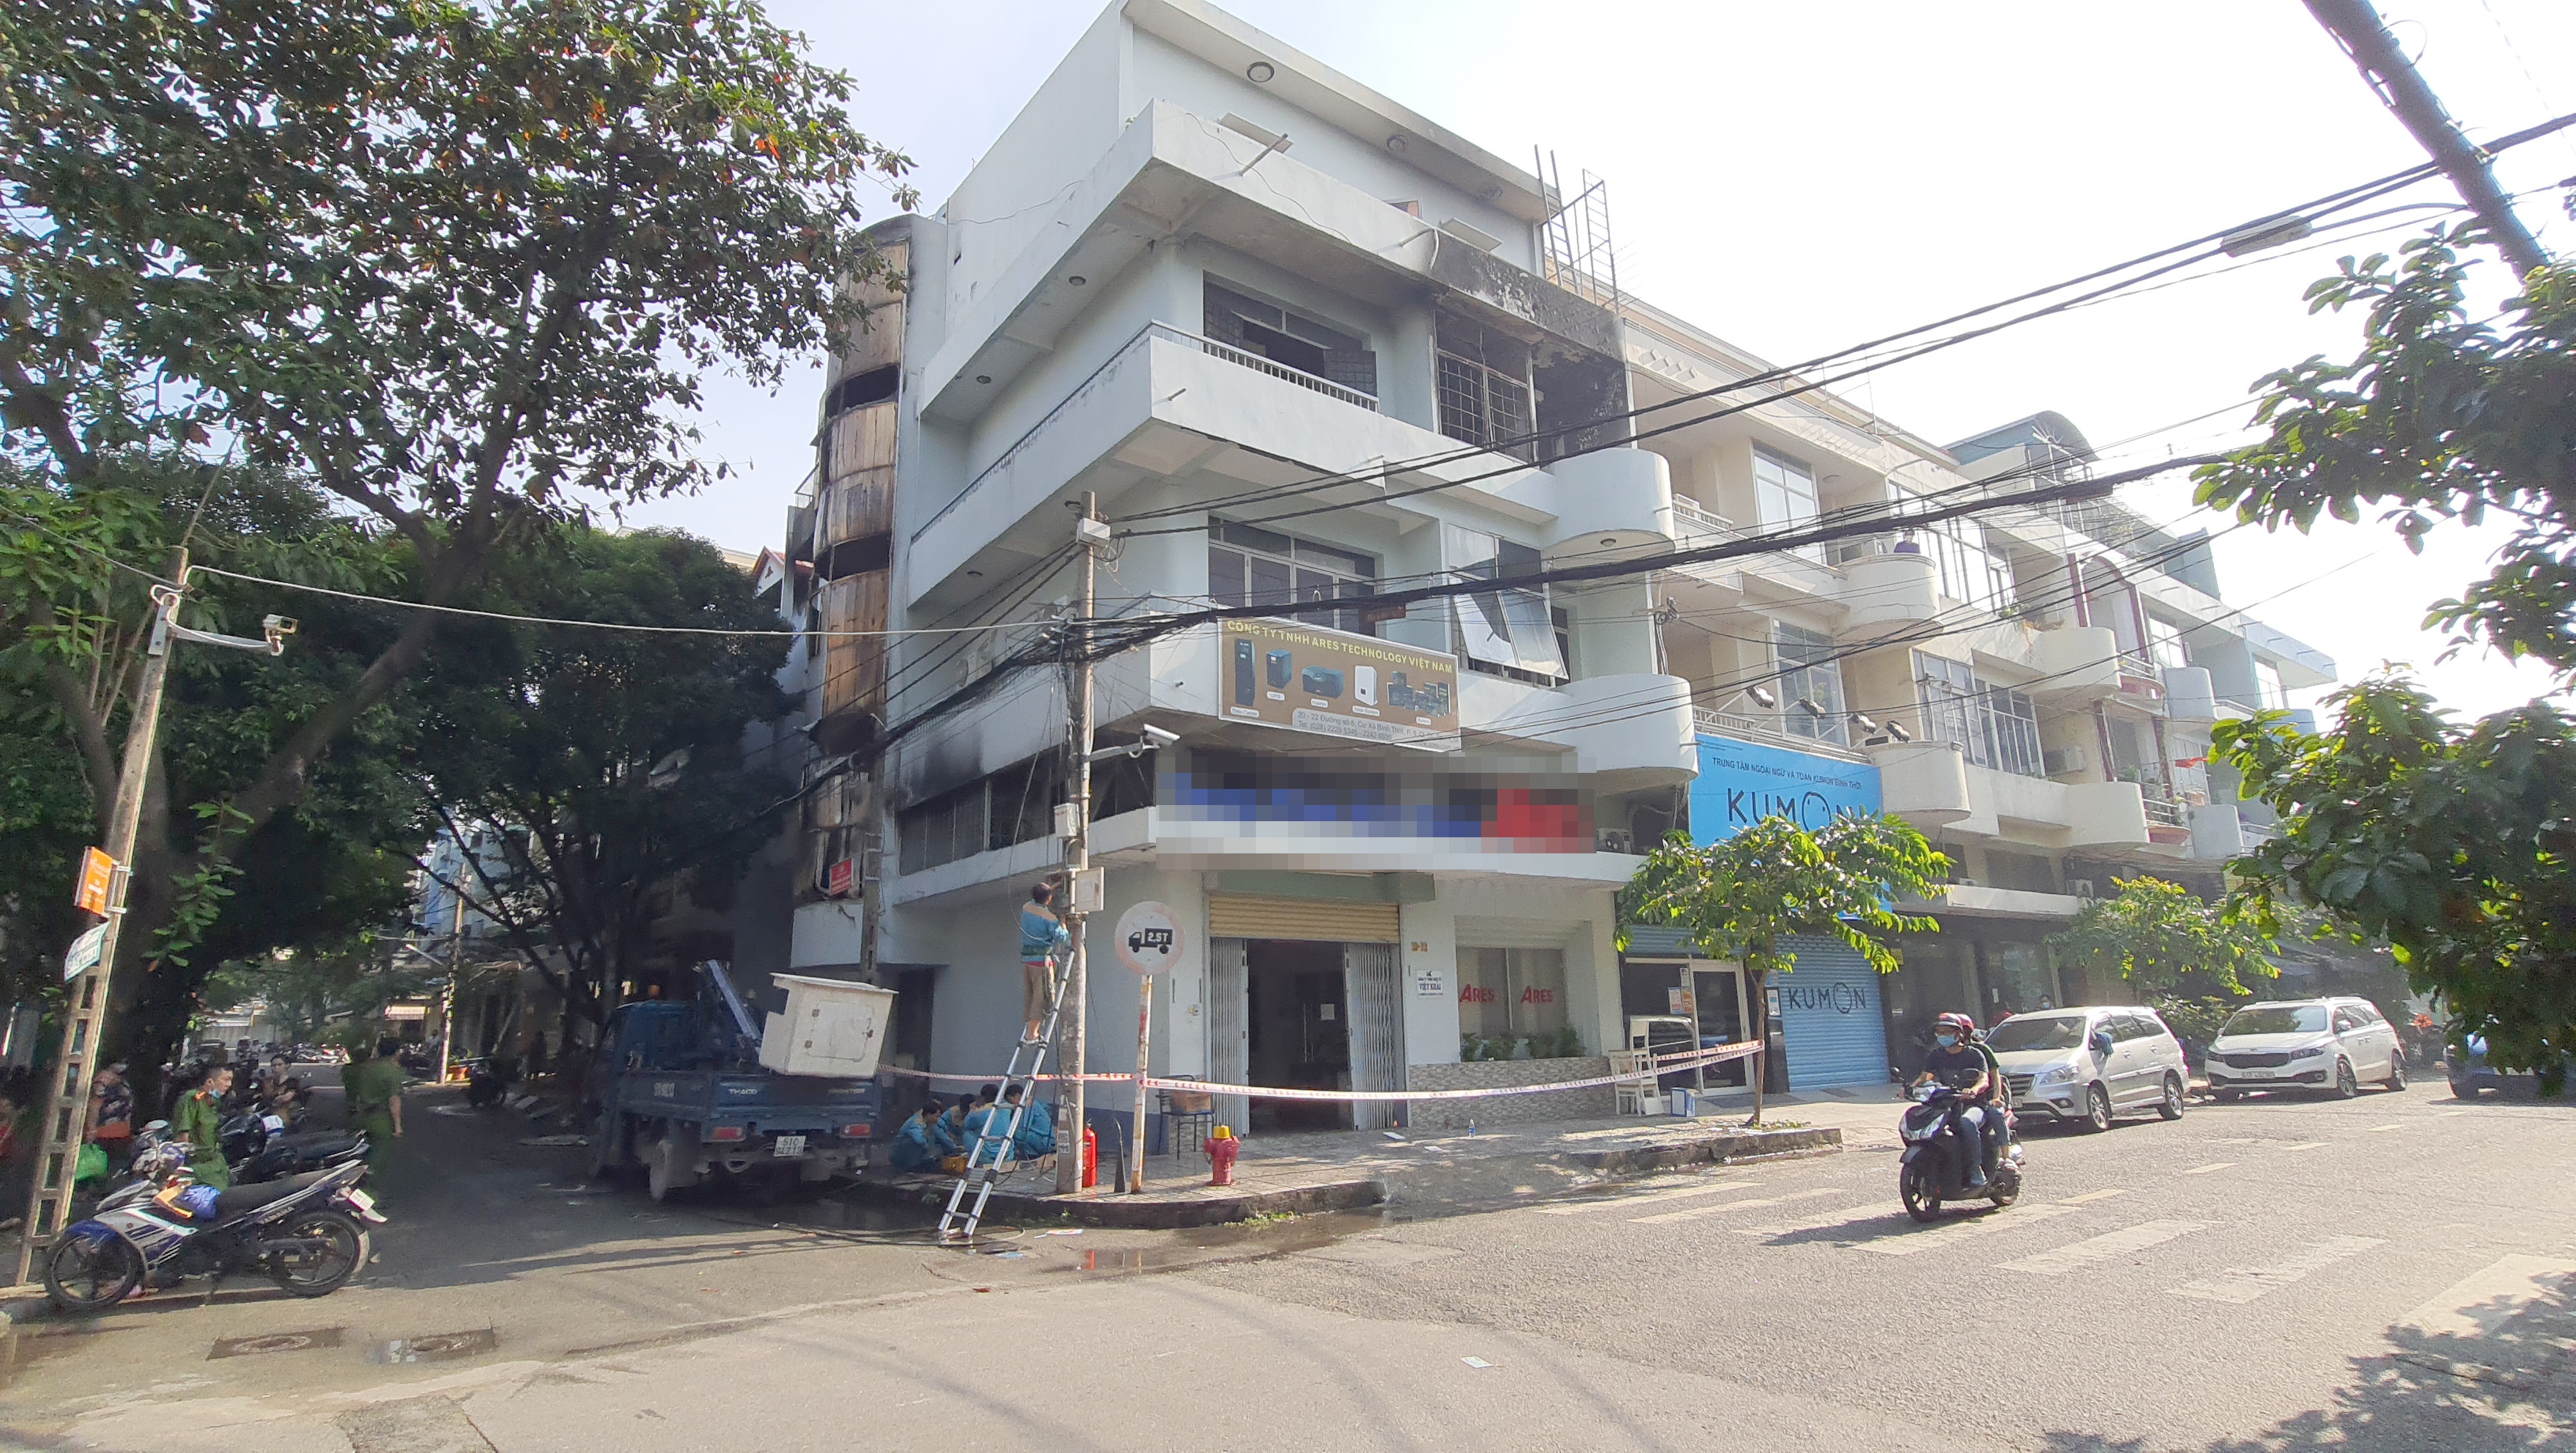 6 người kẹt trong căn nhà 5 tầng cháy ngùn ngụt ở Sài Gòn - Ảnh 3.